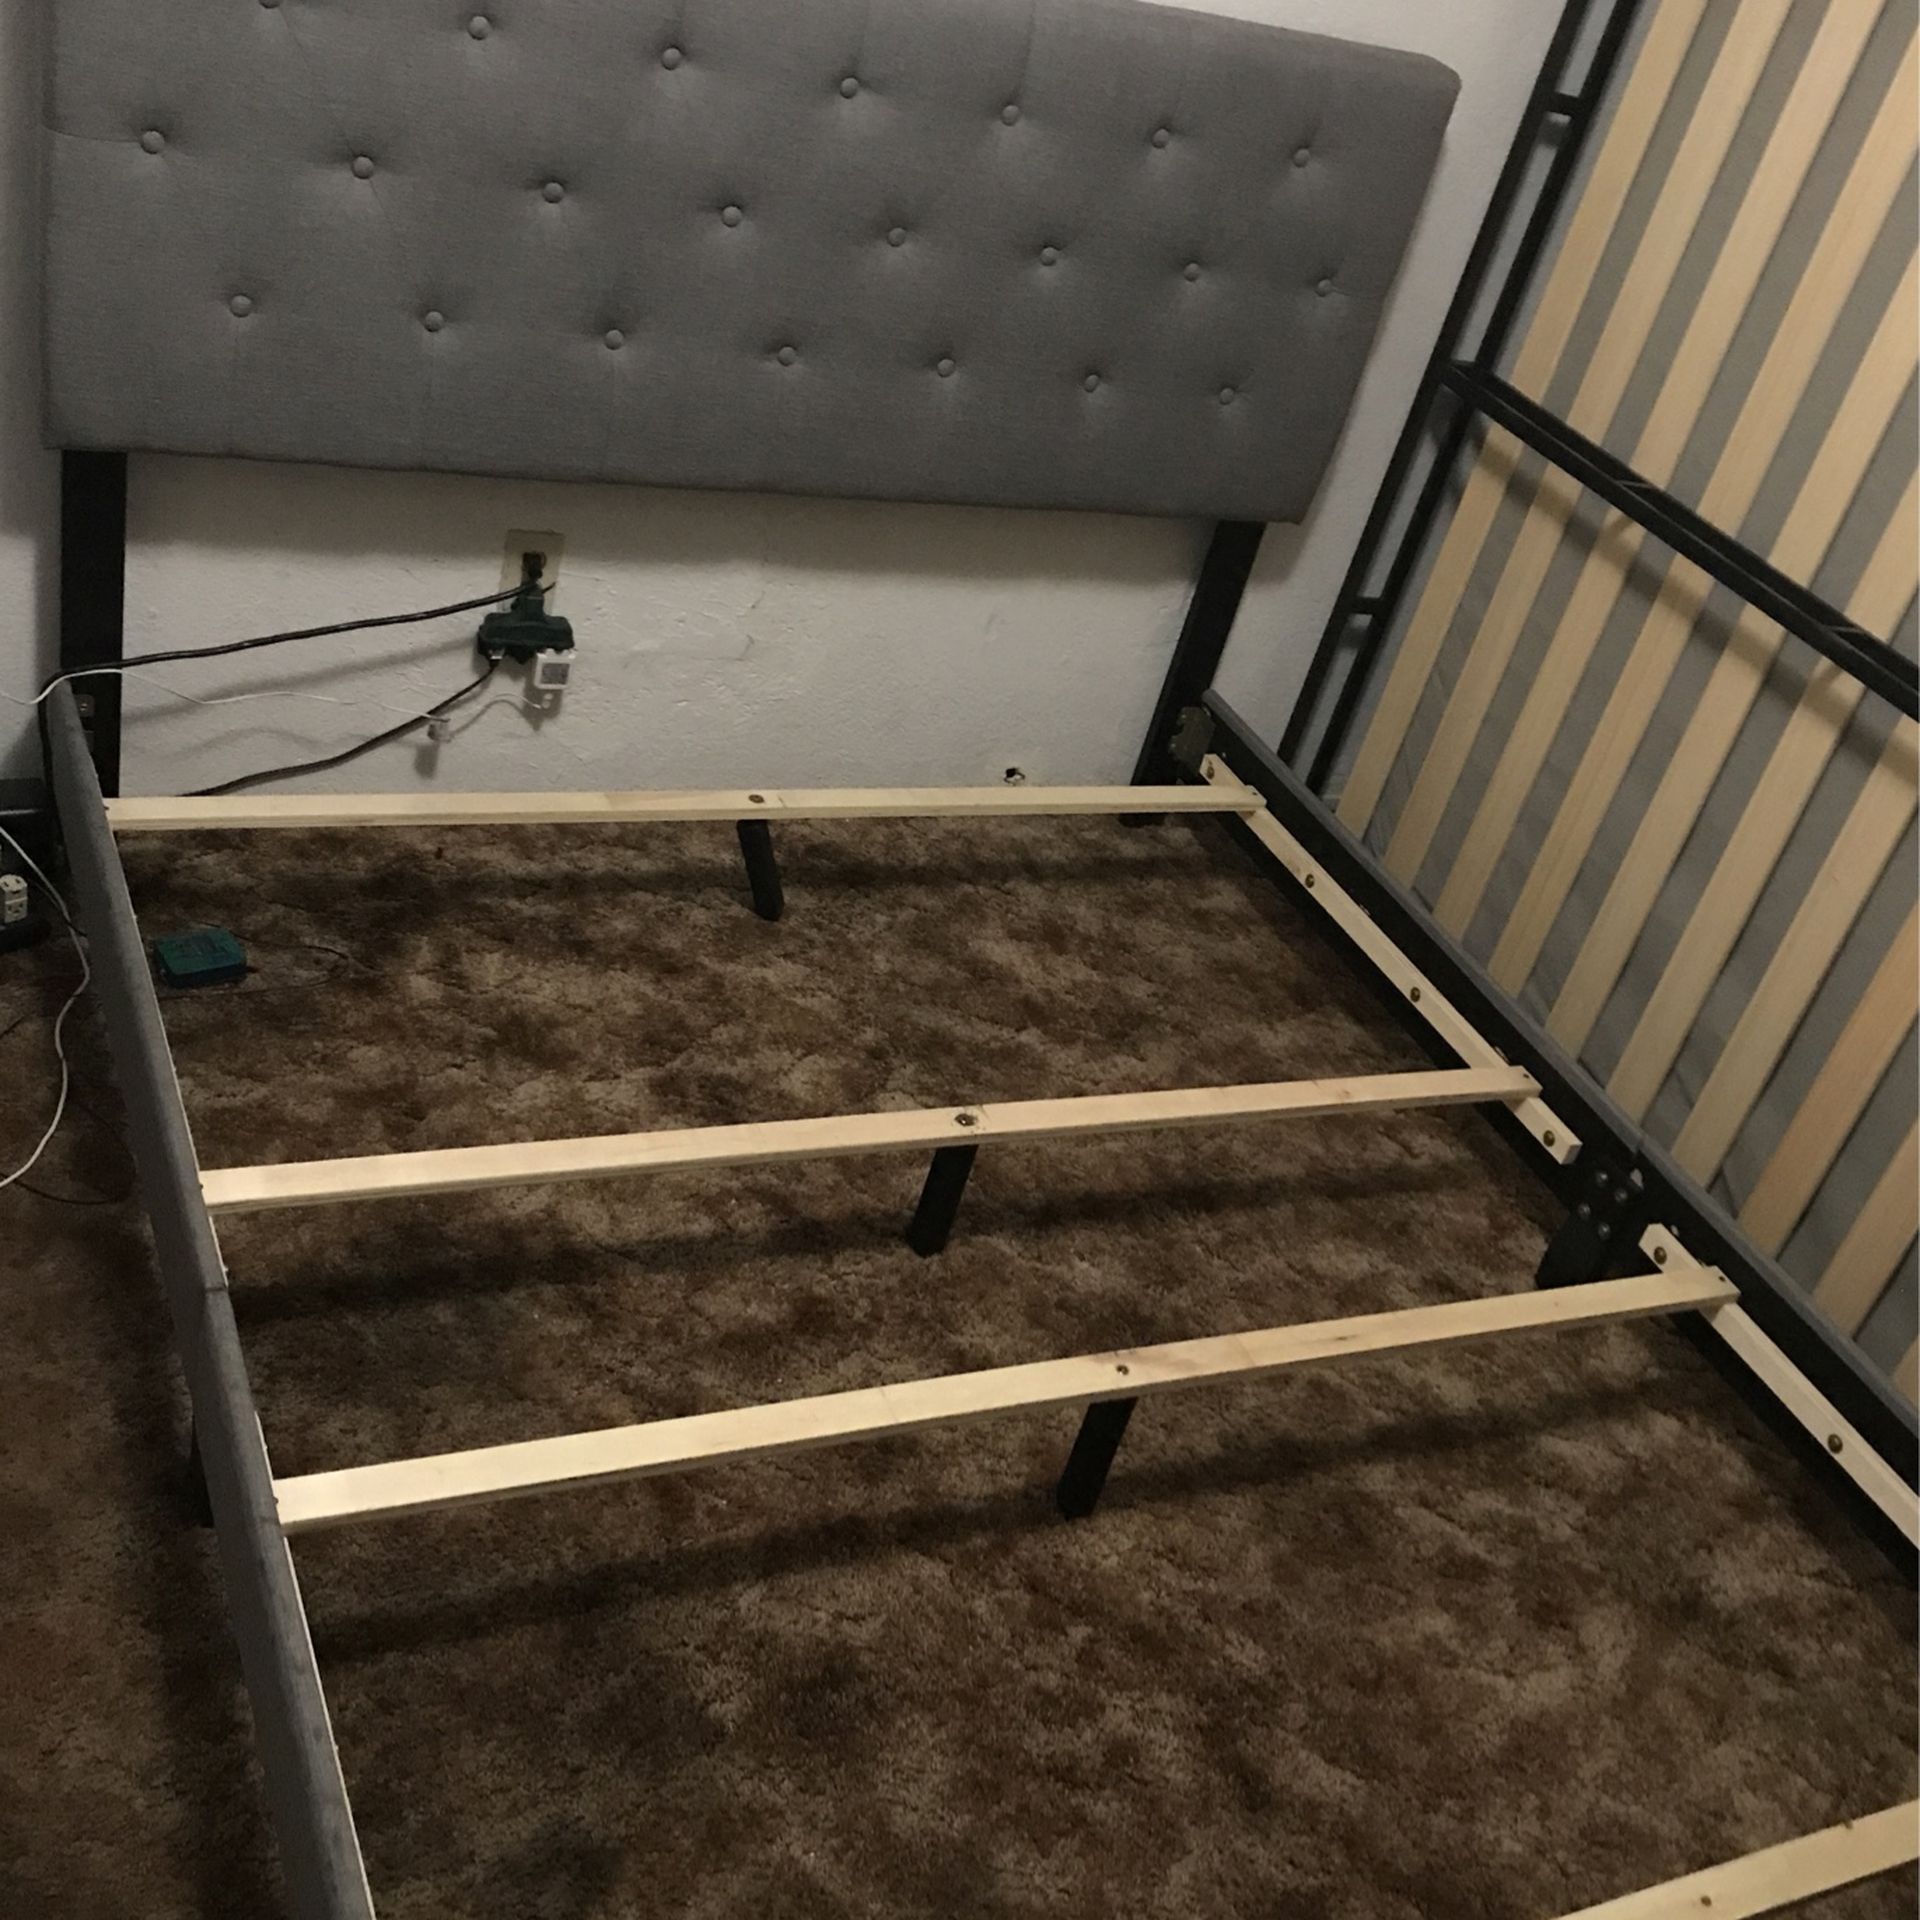 Complete Queen Bed